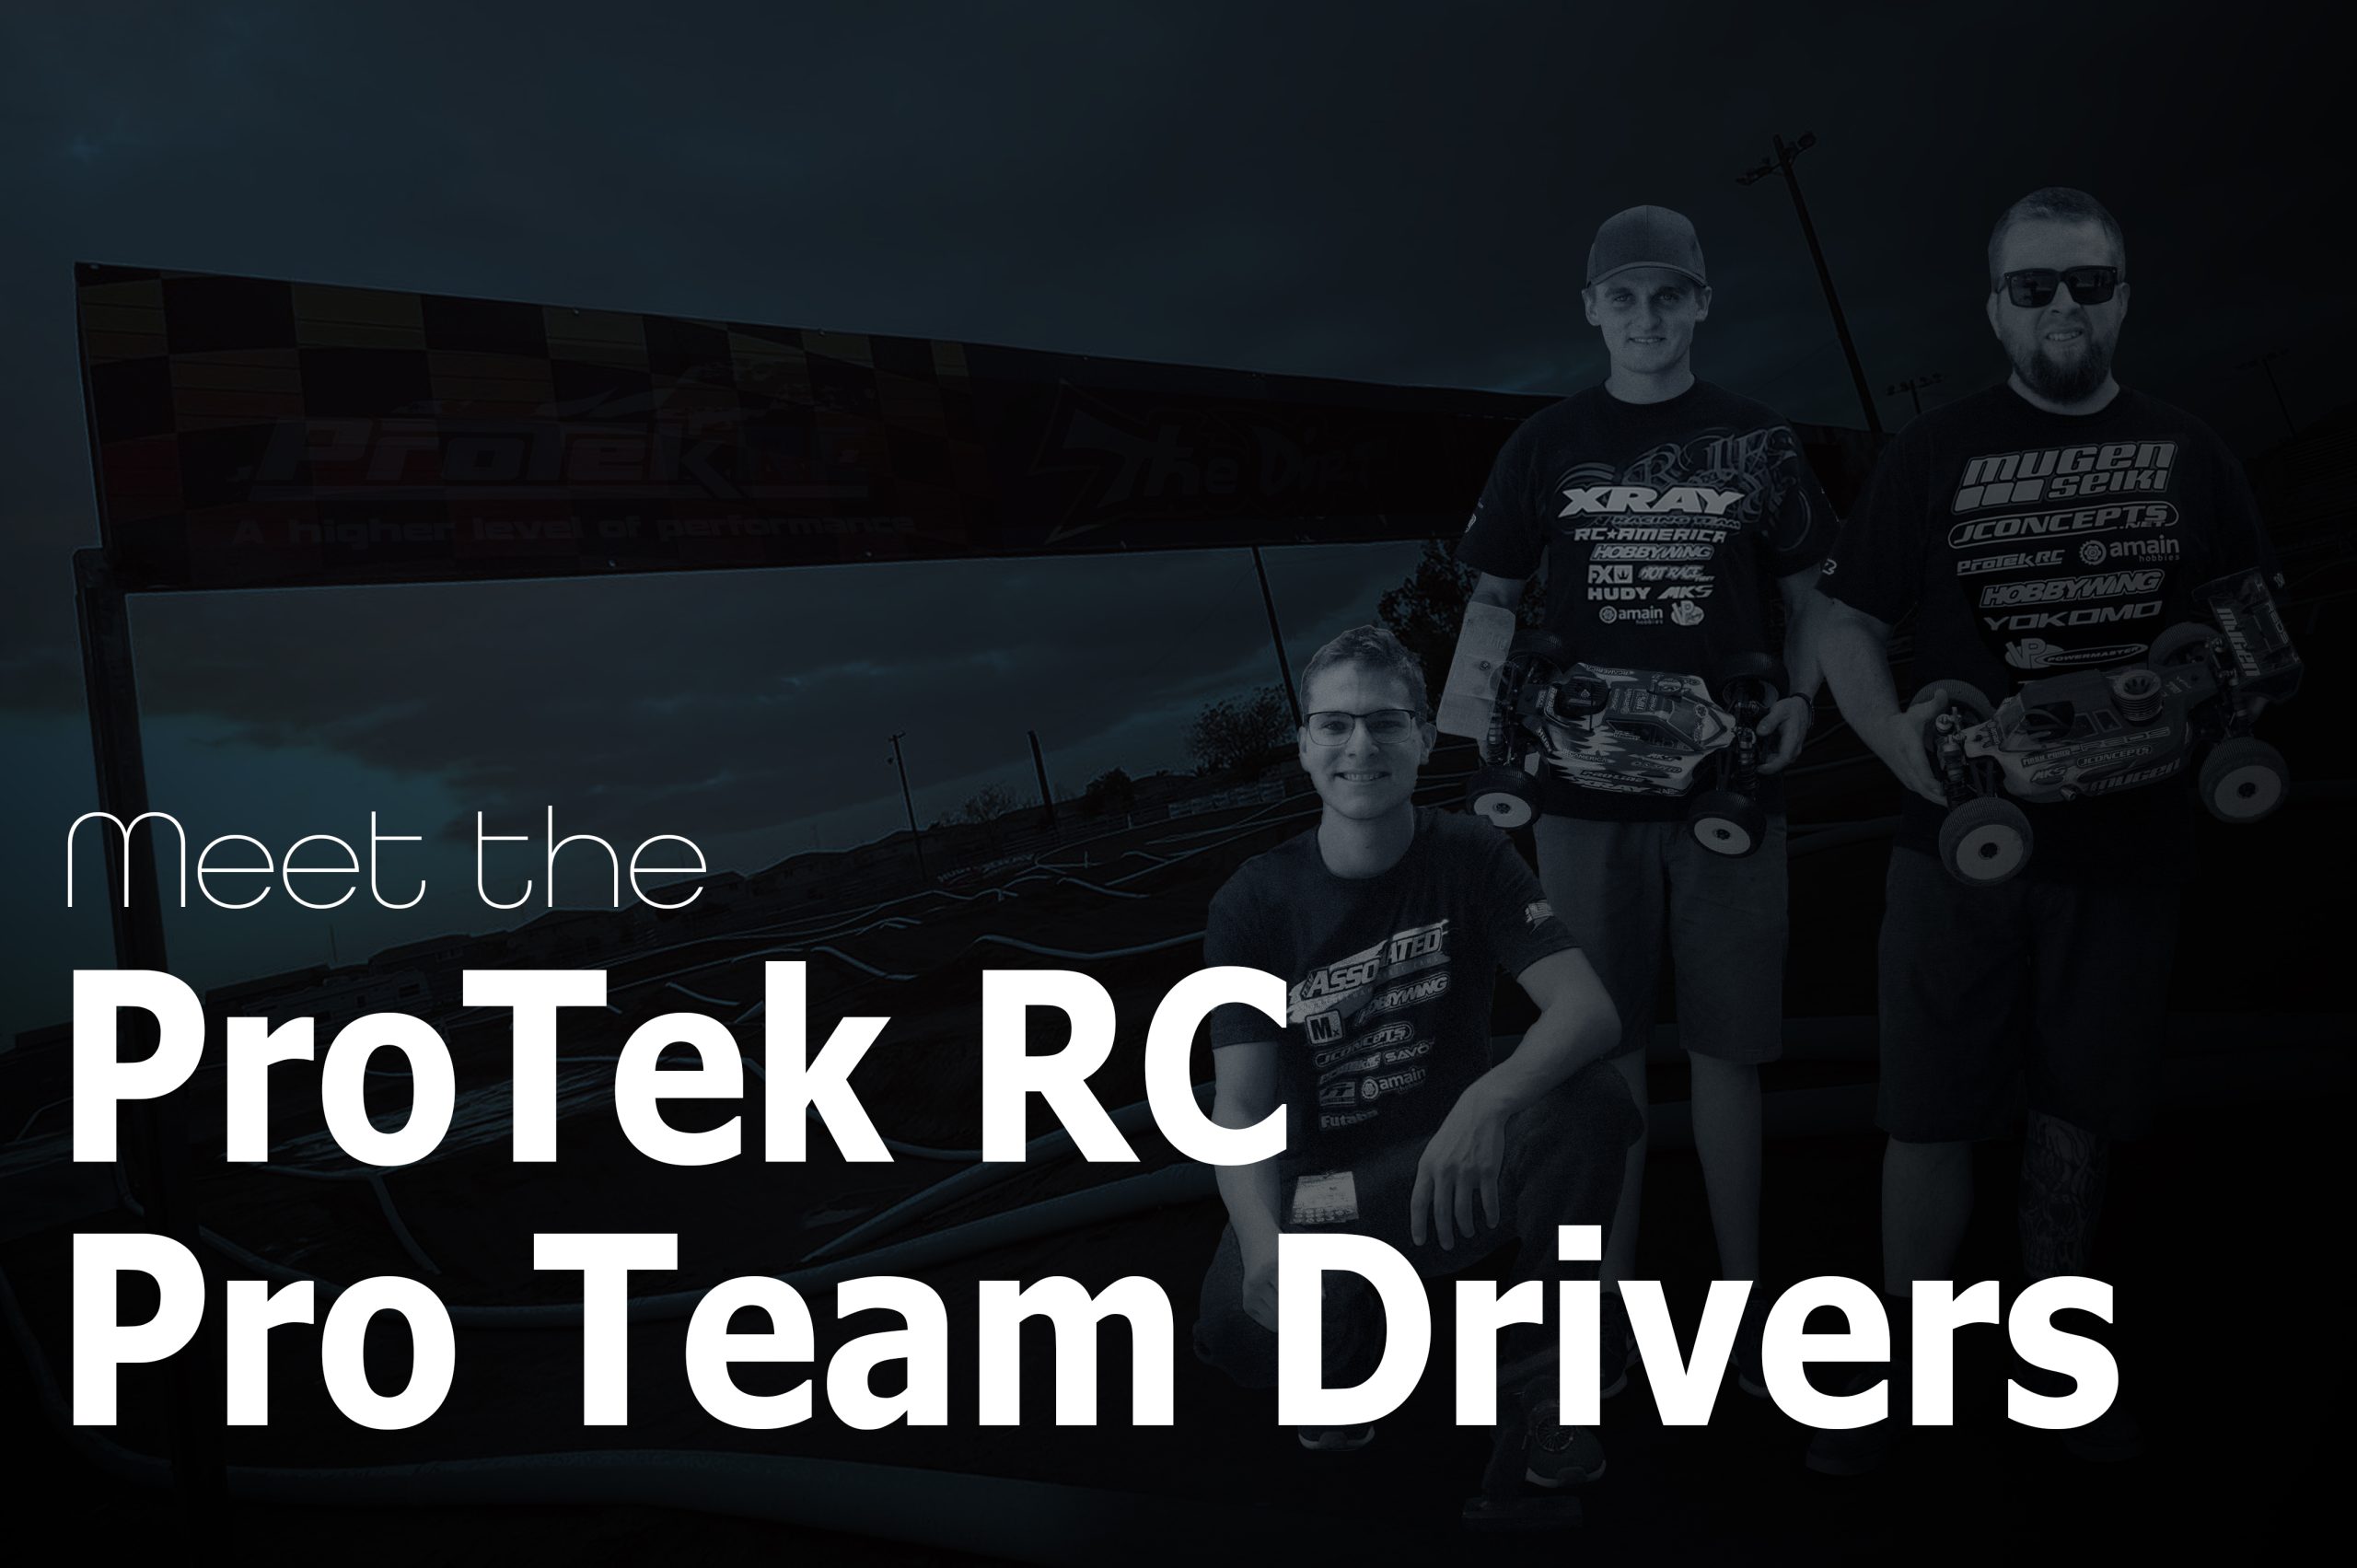 ProTek RC Announces Its 2022 Pro Race Team